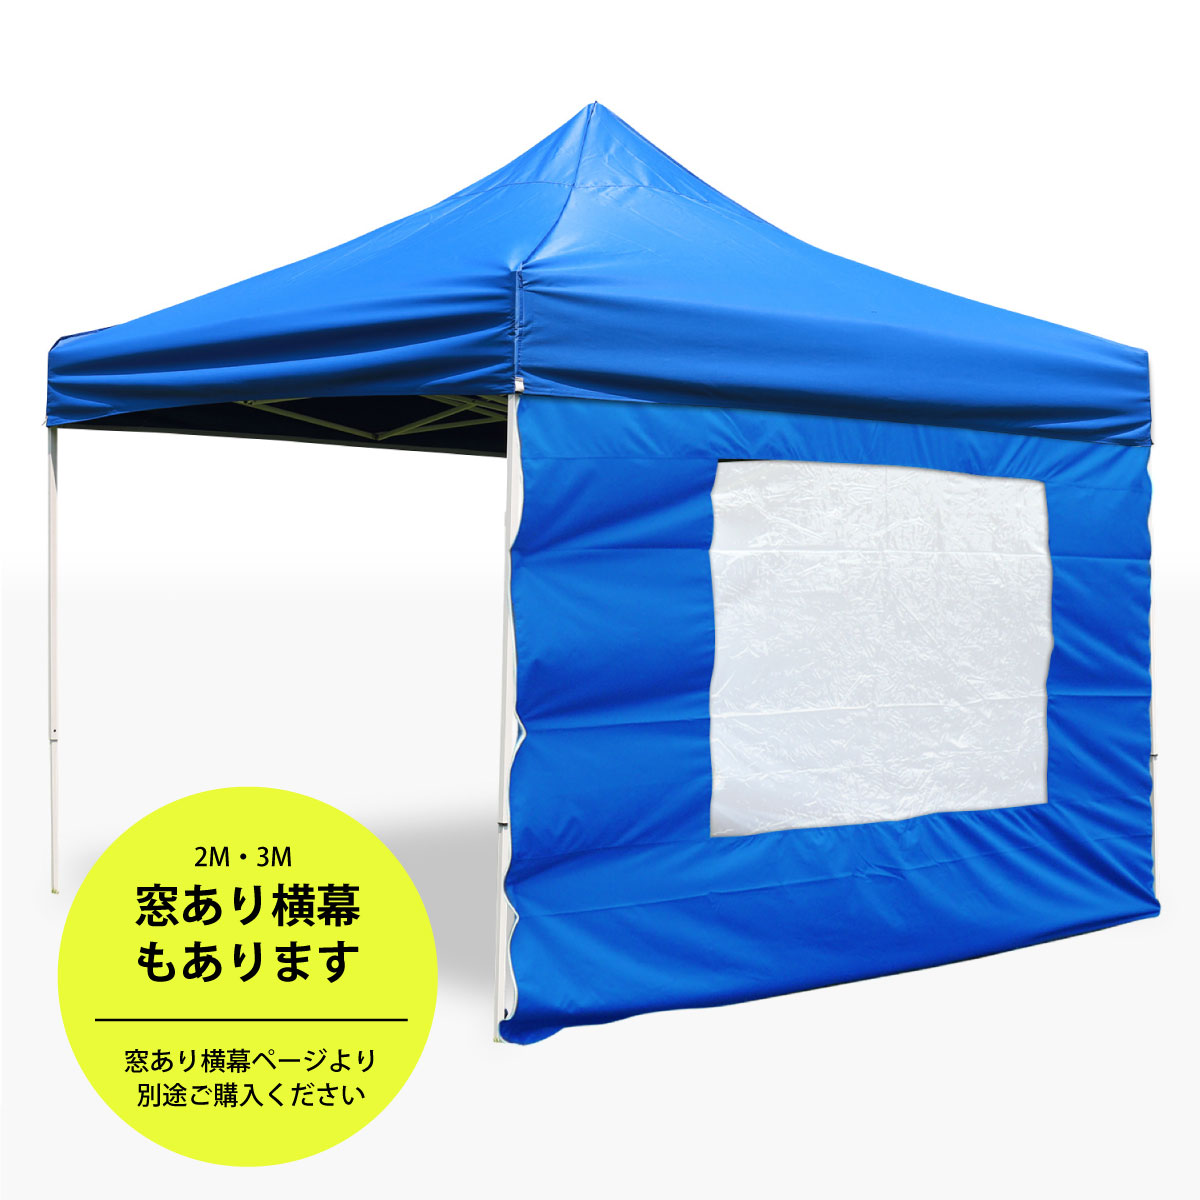  tent width curtain 3M window none side wall side seat waterproof fire prevention UV cut 